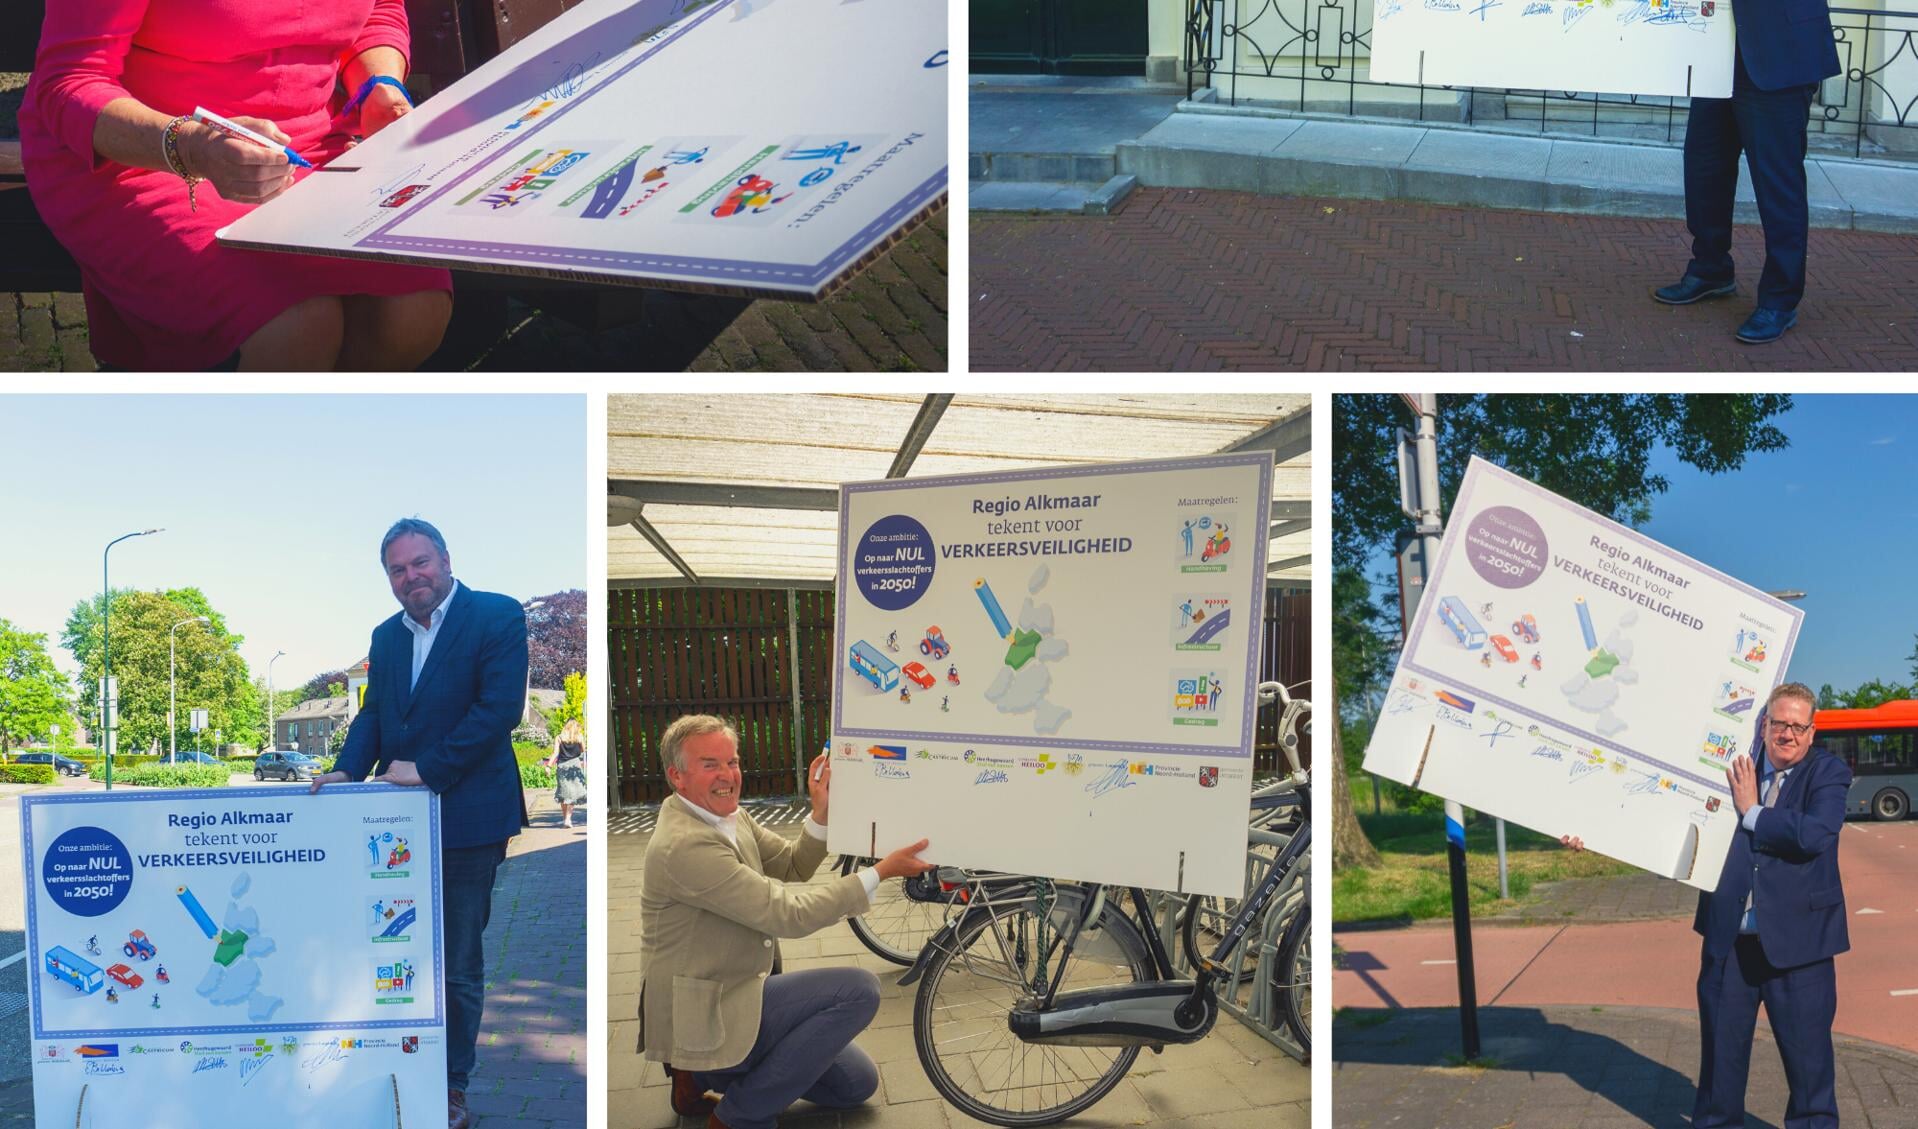 Samen met de andere verkeerswethouders van de BUCH tekent Cecilia van Weel de intentieverklaring Verkeersveiligheid:  "Op naar nul verkeersslachtoffers in 2050"